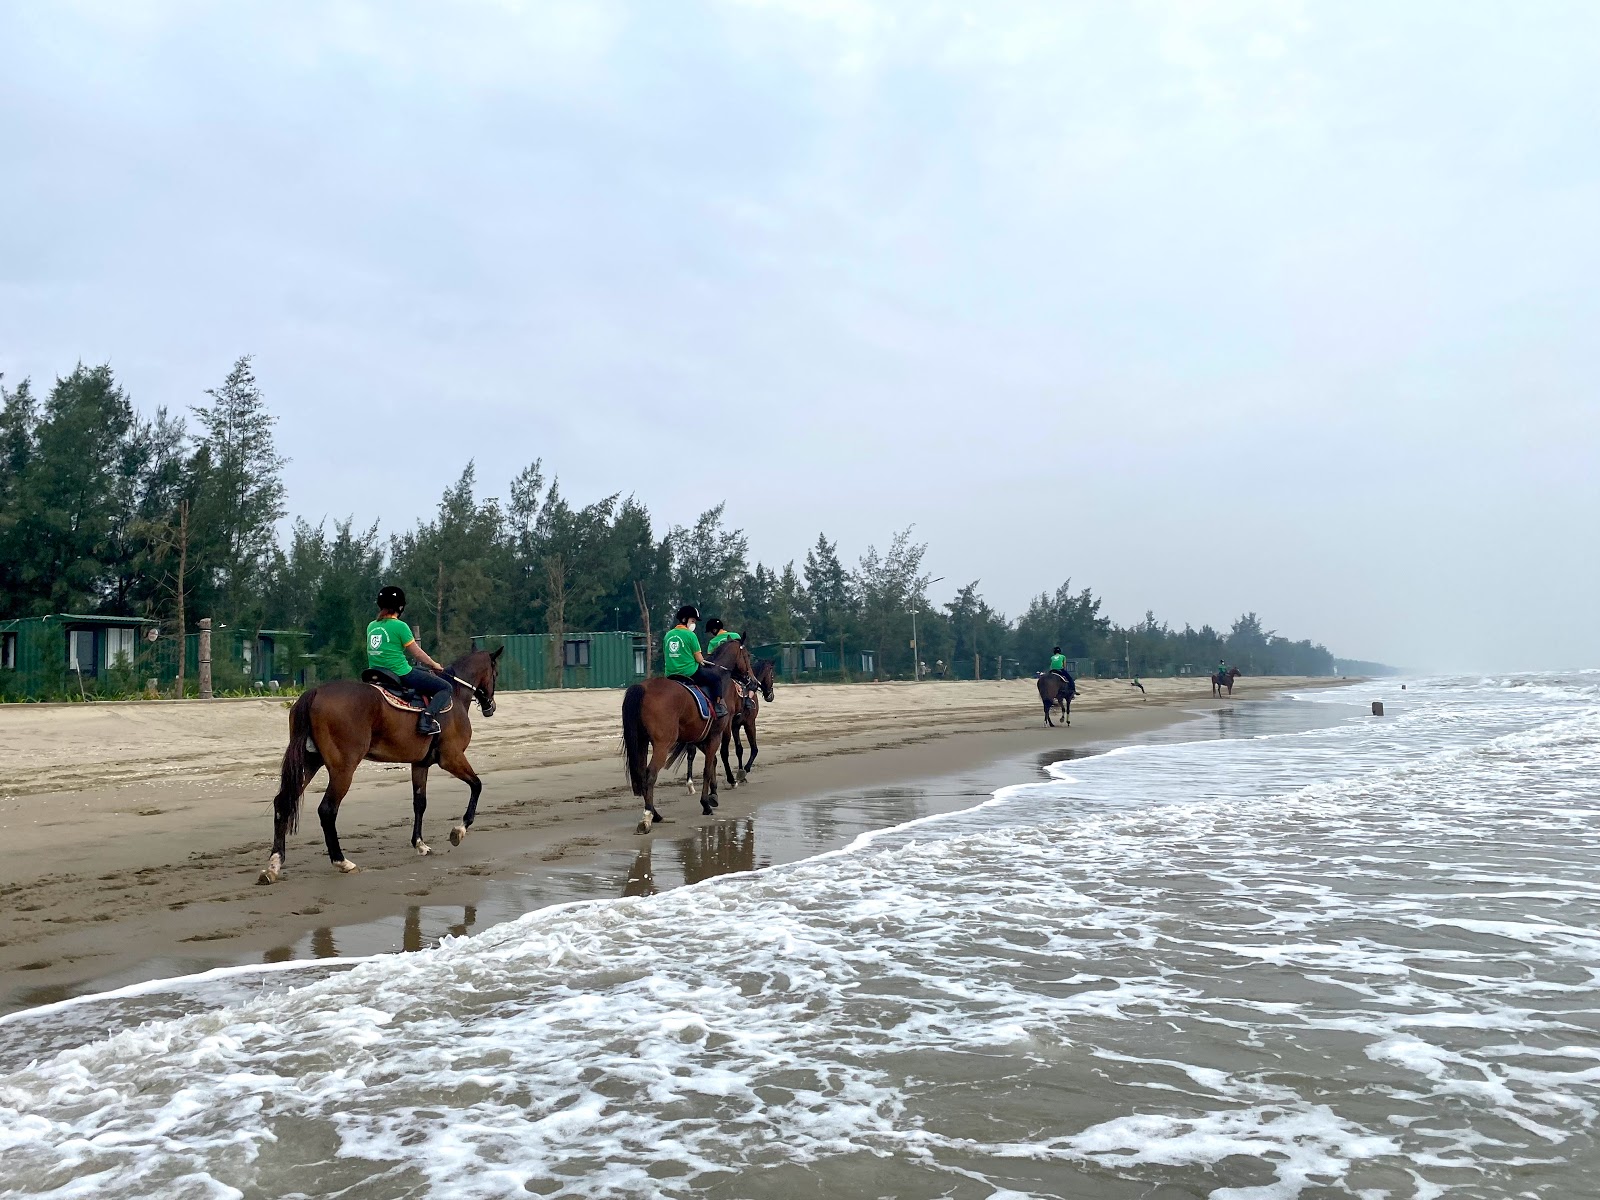 Van Hai Beach'in fotoğrafı geniş plaj ile birlikte